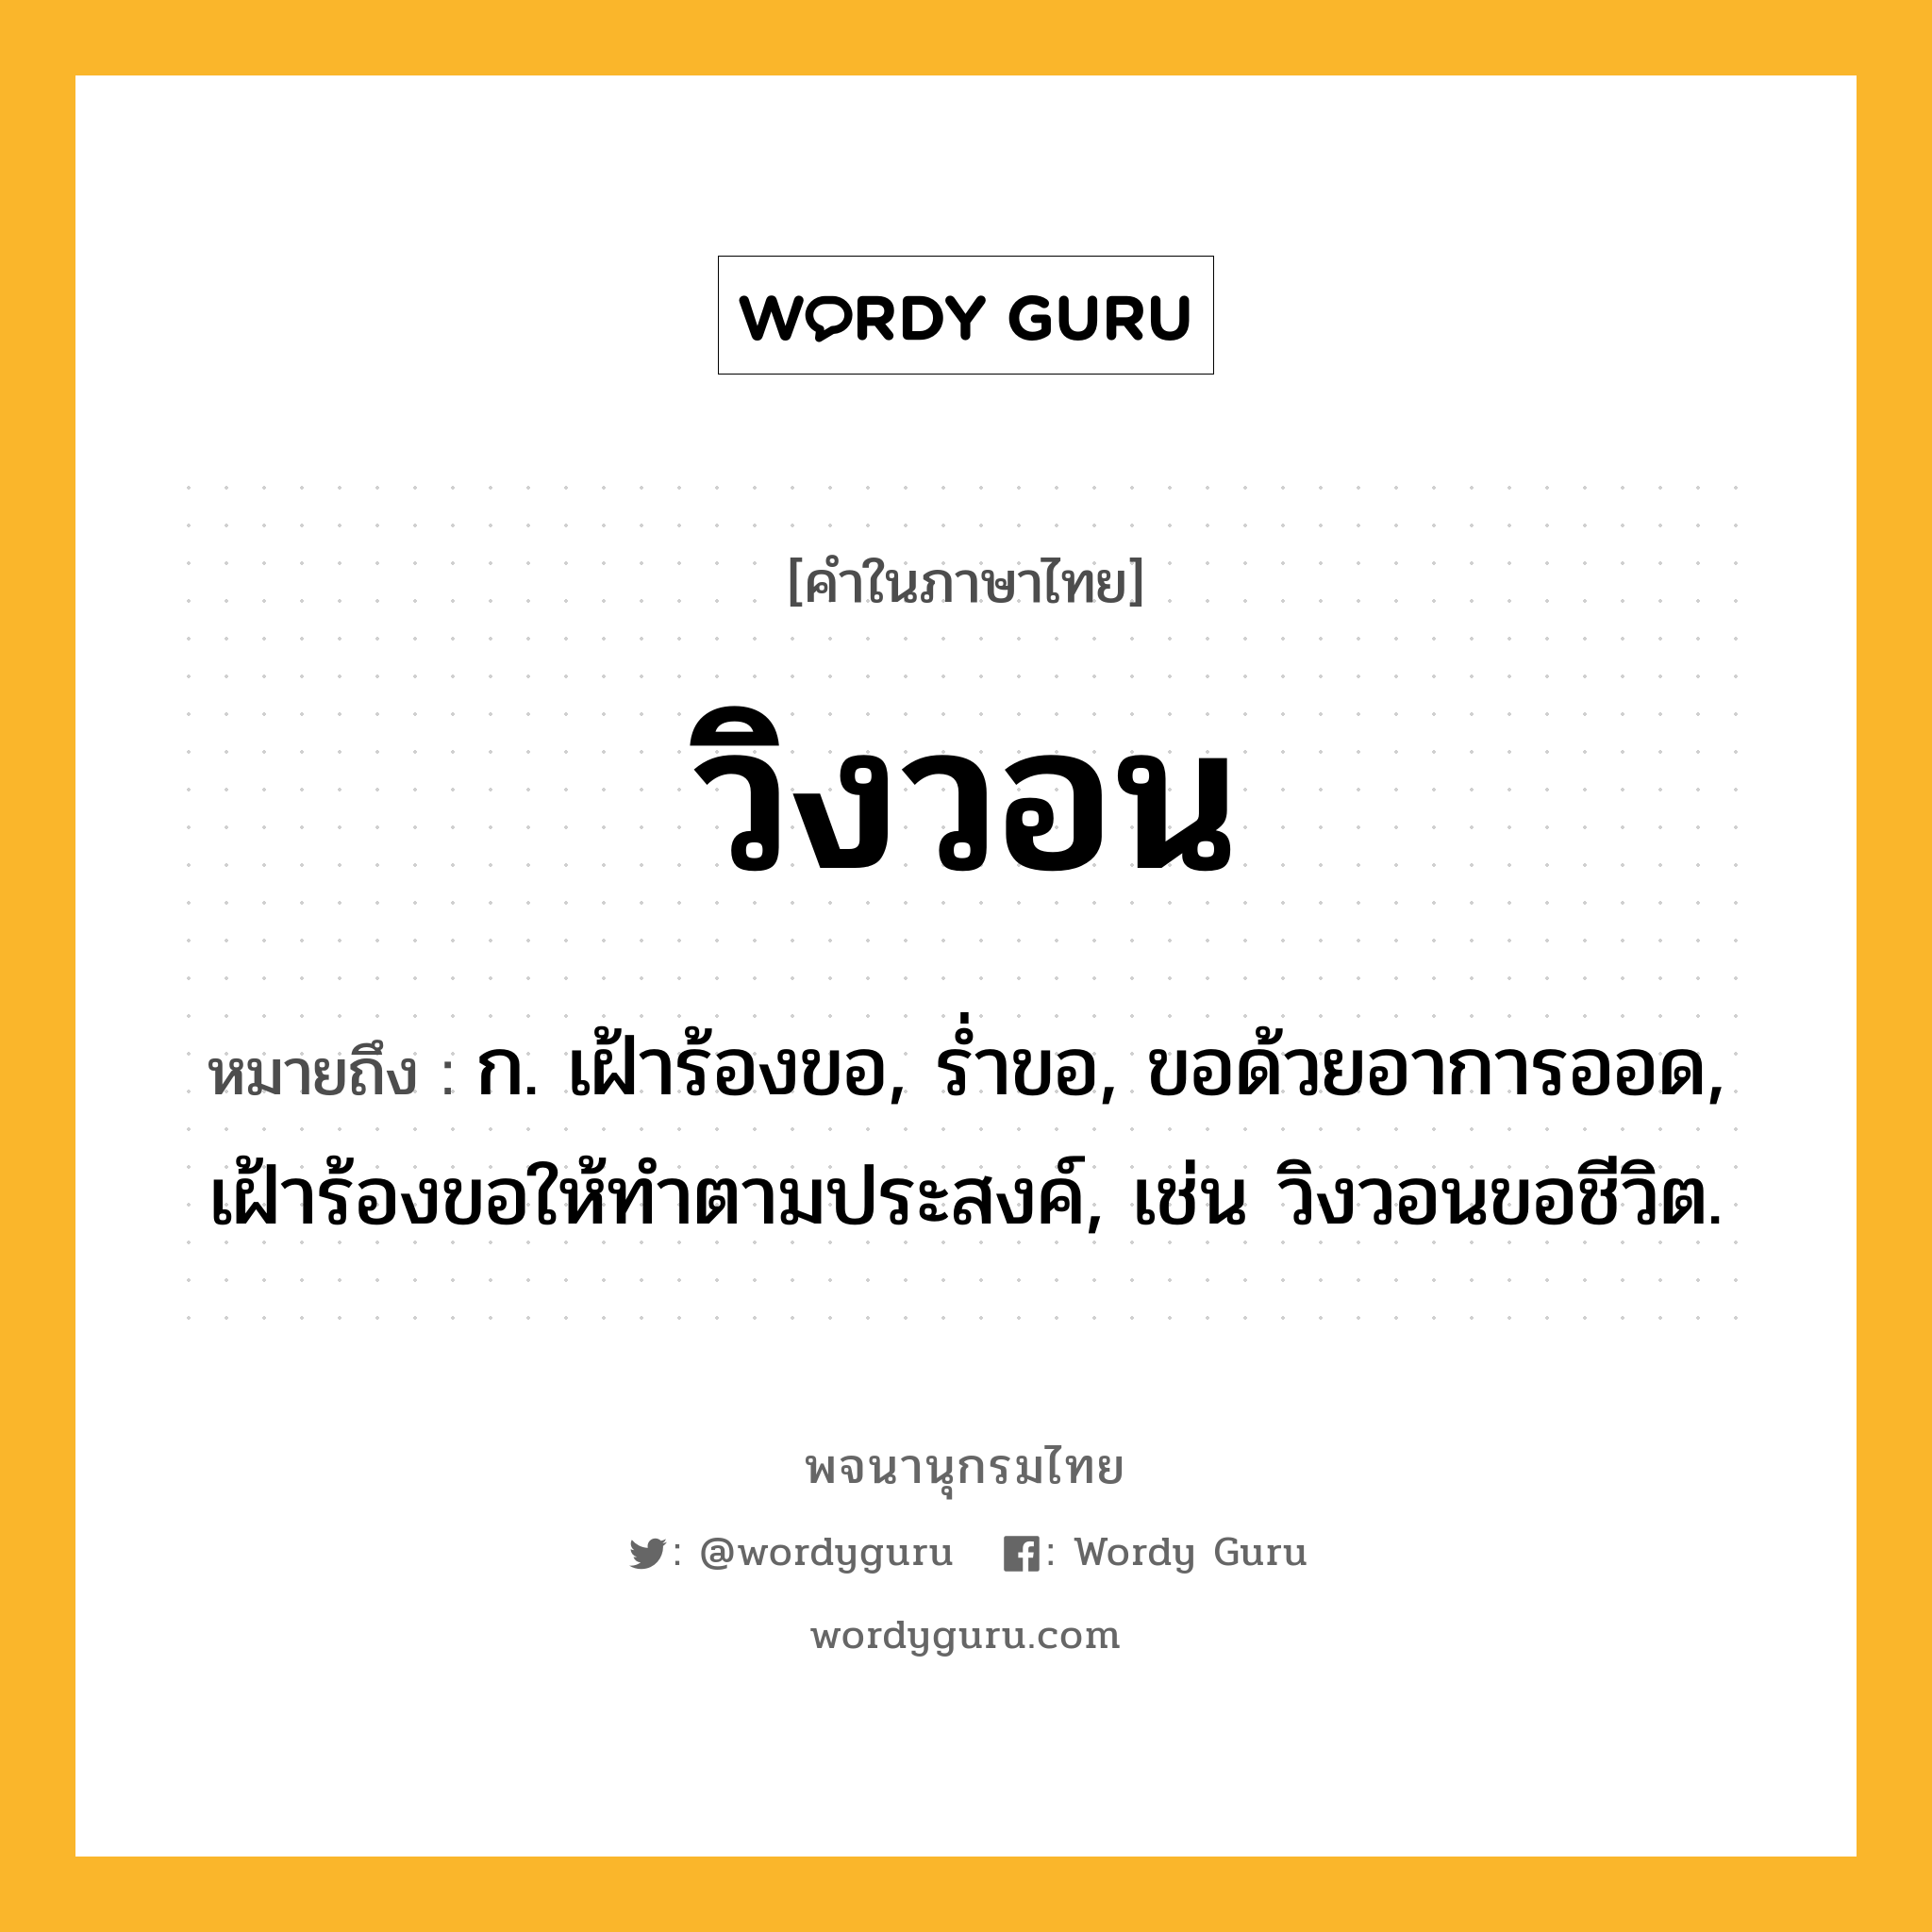 วิงวอน หมายถึงอะไร?, คำในภาษาไทย วิงวอน หมายถึง ก. เฝ้าร้องขอ, รํ่าขอ, ขอด้วยอาการออด, เฝ้าร้องขอให้ทําตามประสงค์, เช่น วิงวอนขอชีวิต.